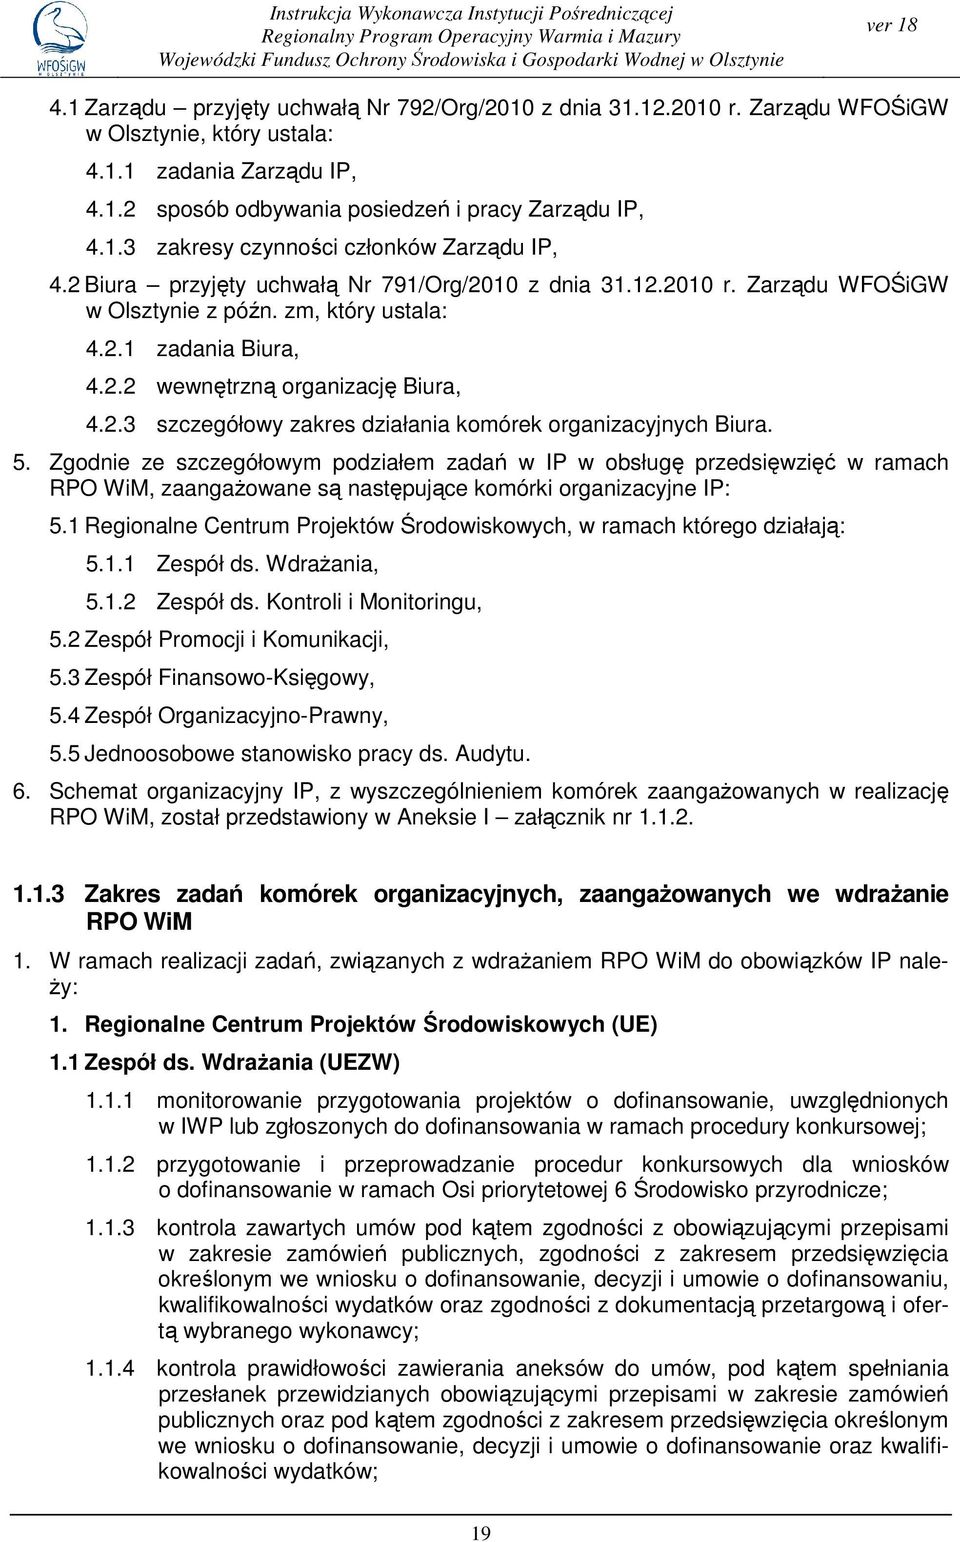 2 Biura przyjęty uchwałą Nr 791/Org/2010 z dnia 31.12.2010 r. Zarządu WFOŚiGW w Olsztynie z późn. zm, który ustala: 4.2.1 zadania Biura, 4.2.2 wewnętrzną organizację Biura, 4.2.3 szczegółowy zakres działania komórek organizacyjnych Biura.